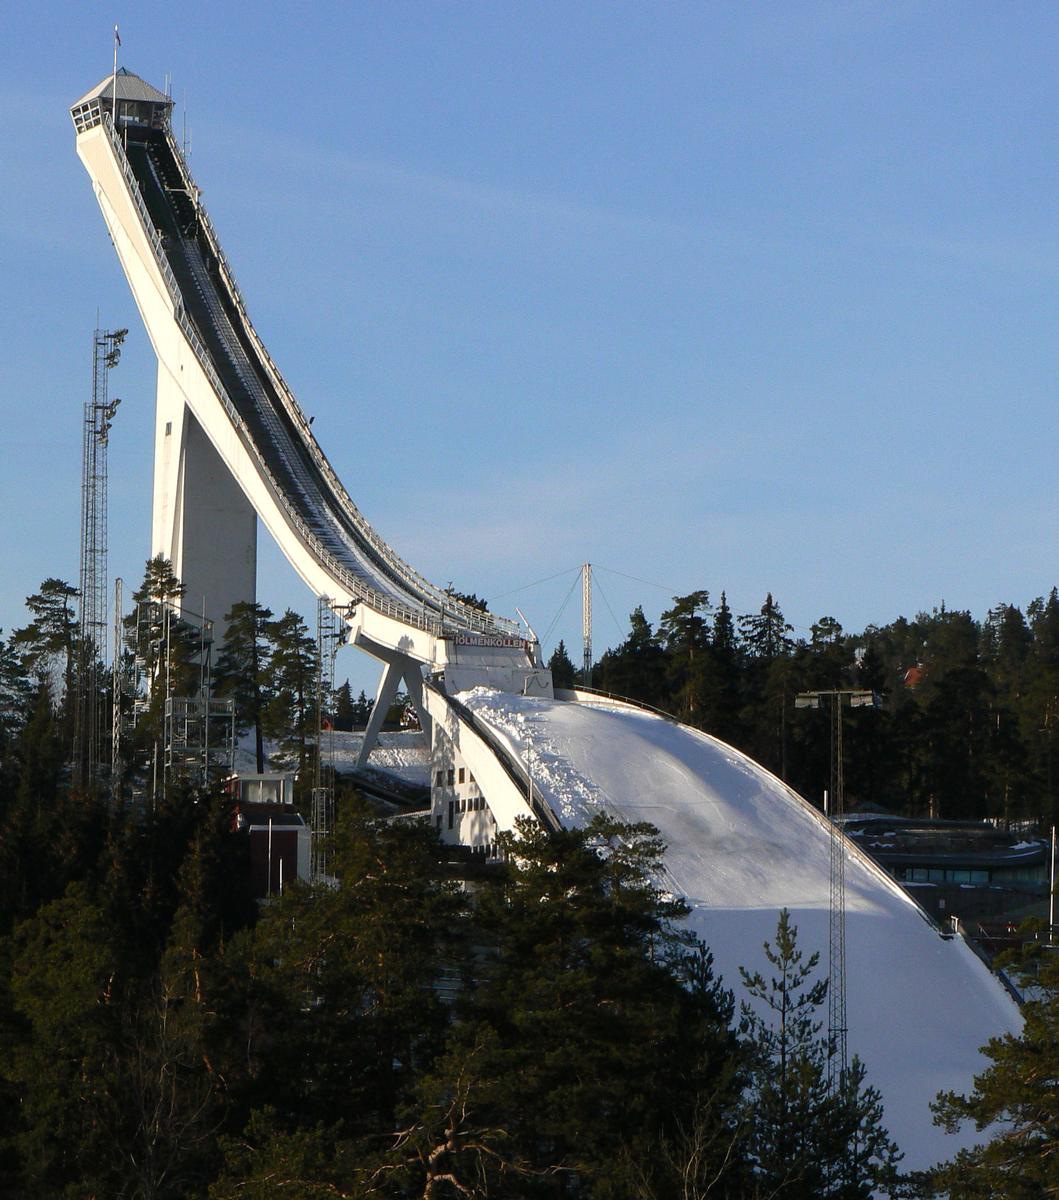 ski jumping ramp